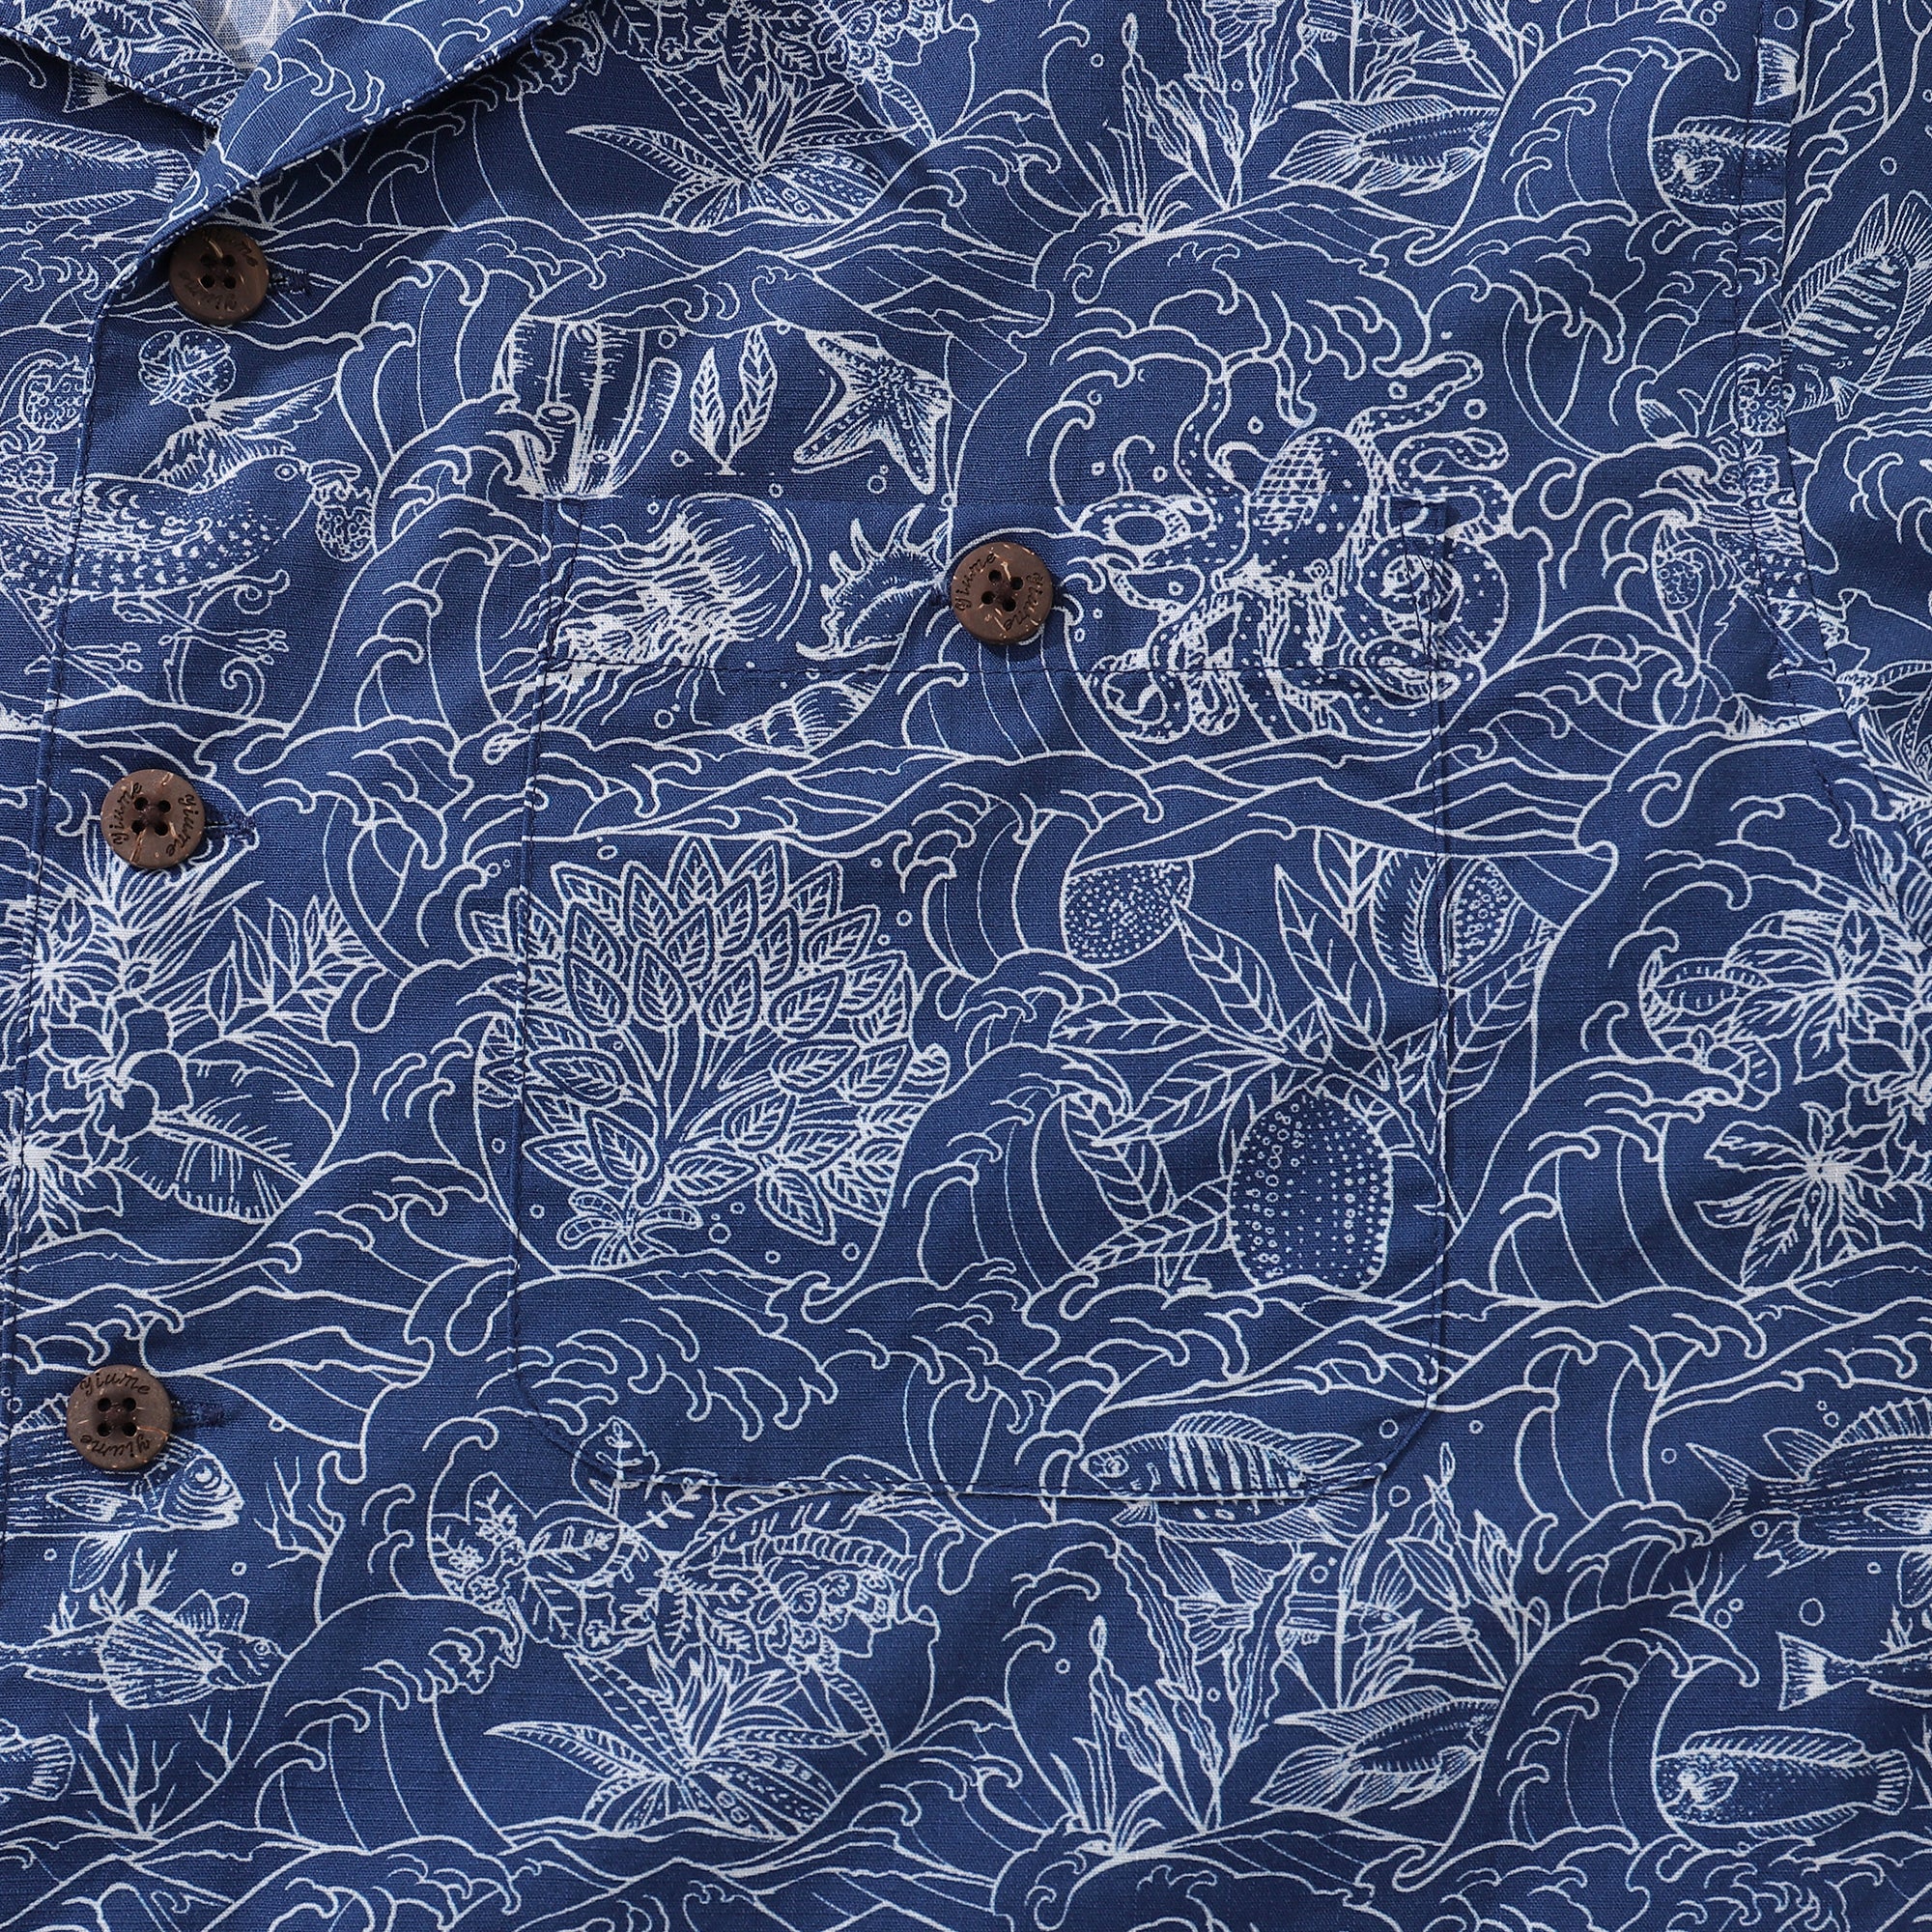 Camisa hawaiana para hombre, camisa de aniversario con nueve cuadrículas cuadradas, cuello de campamento, 100% algodón